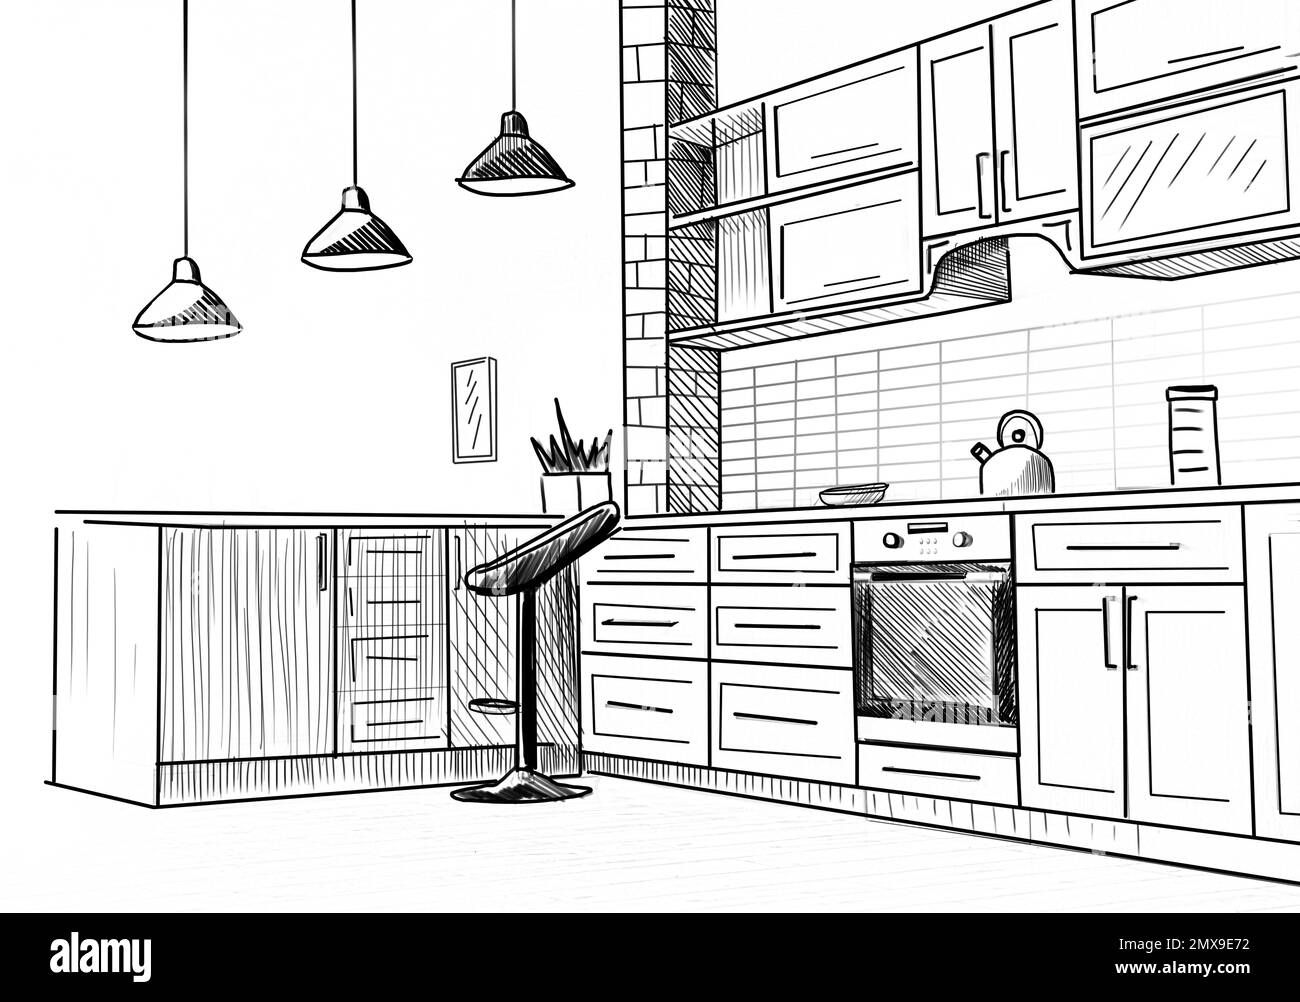 Stilvolle Kücheneinrichtung im Apartment. Illustriertes Innendesign Stockfoto